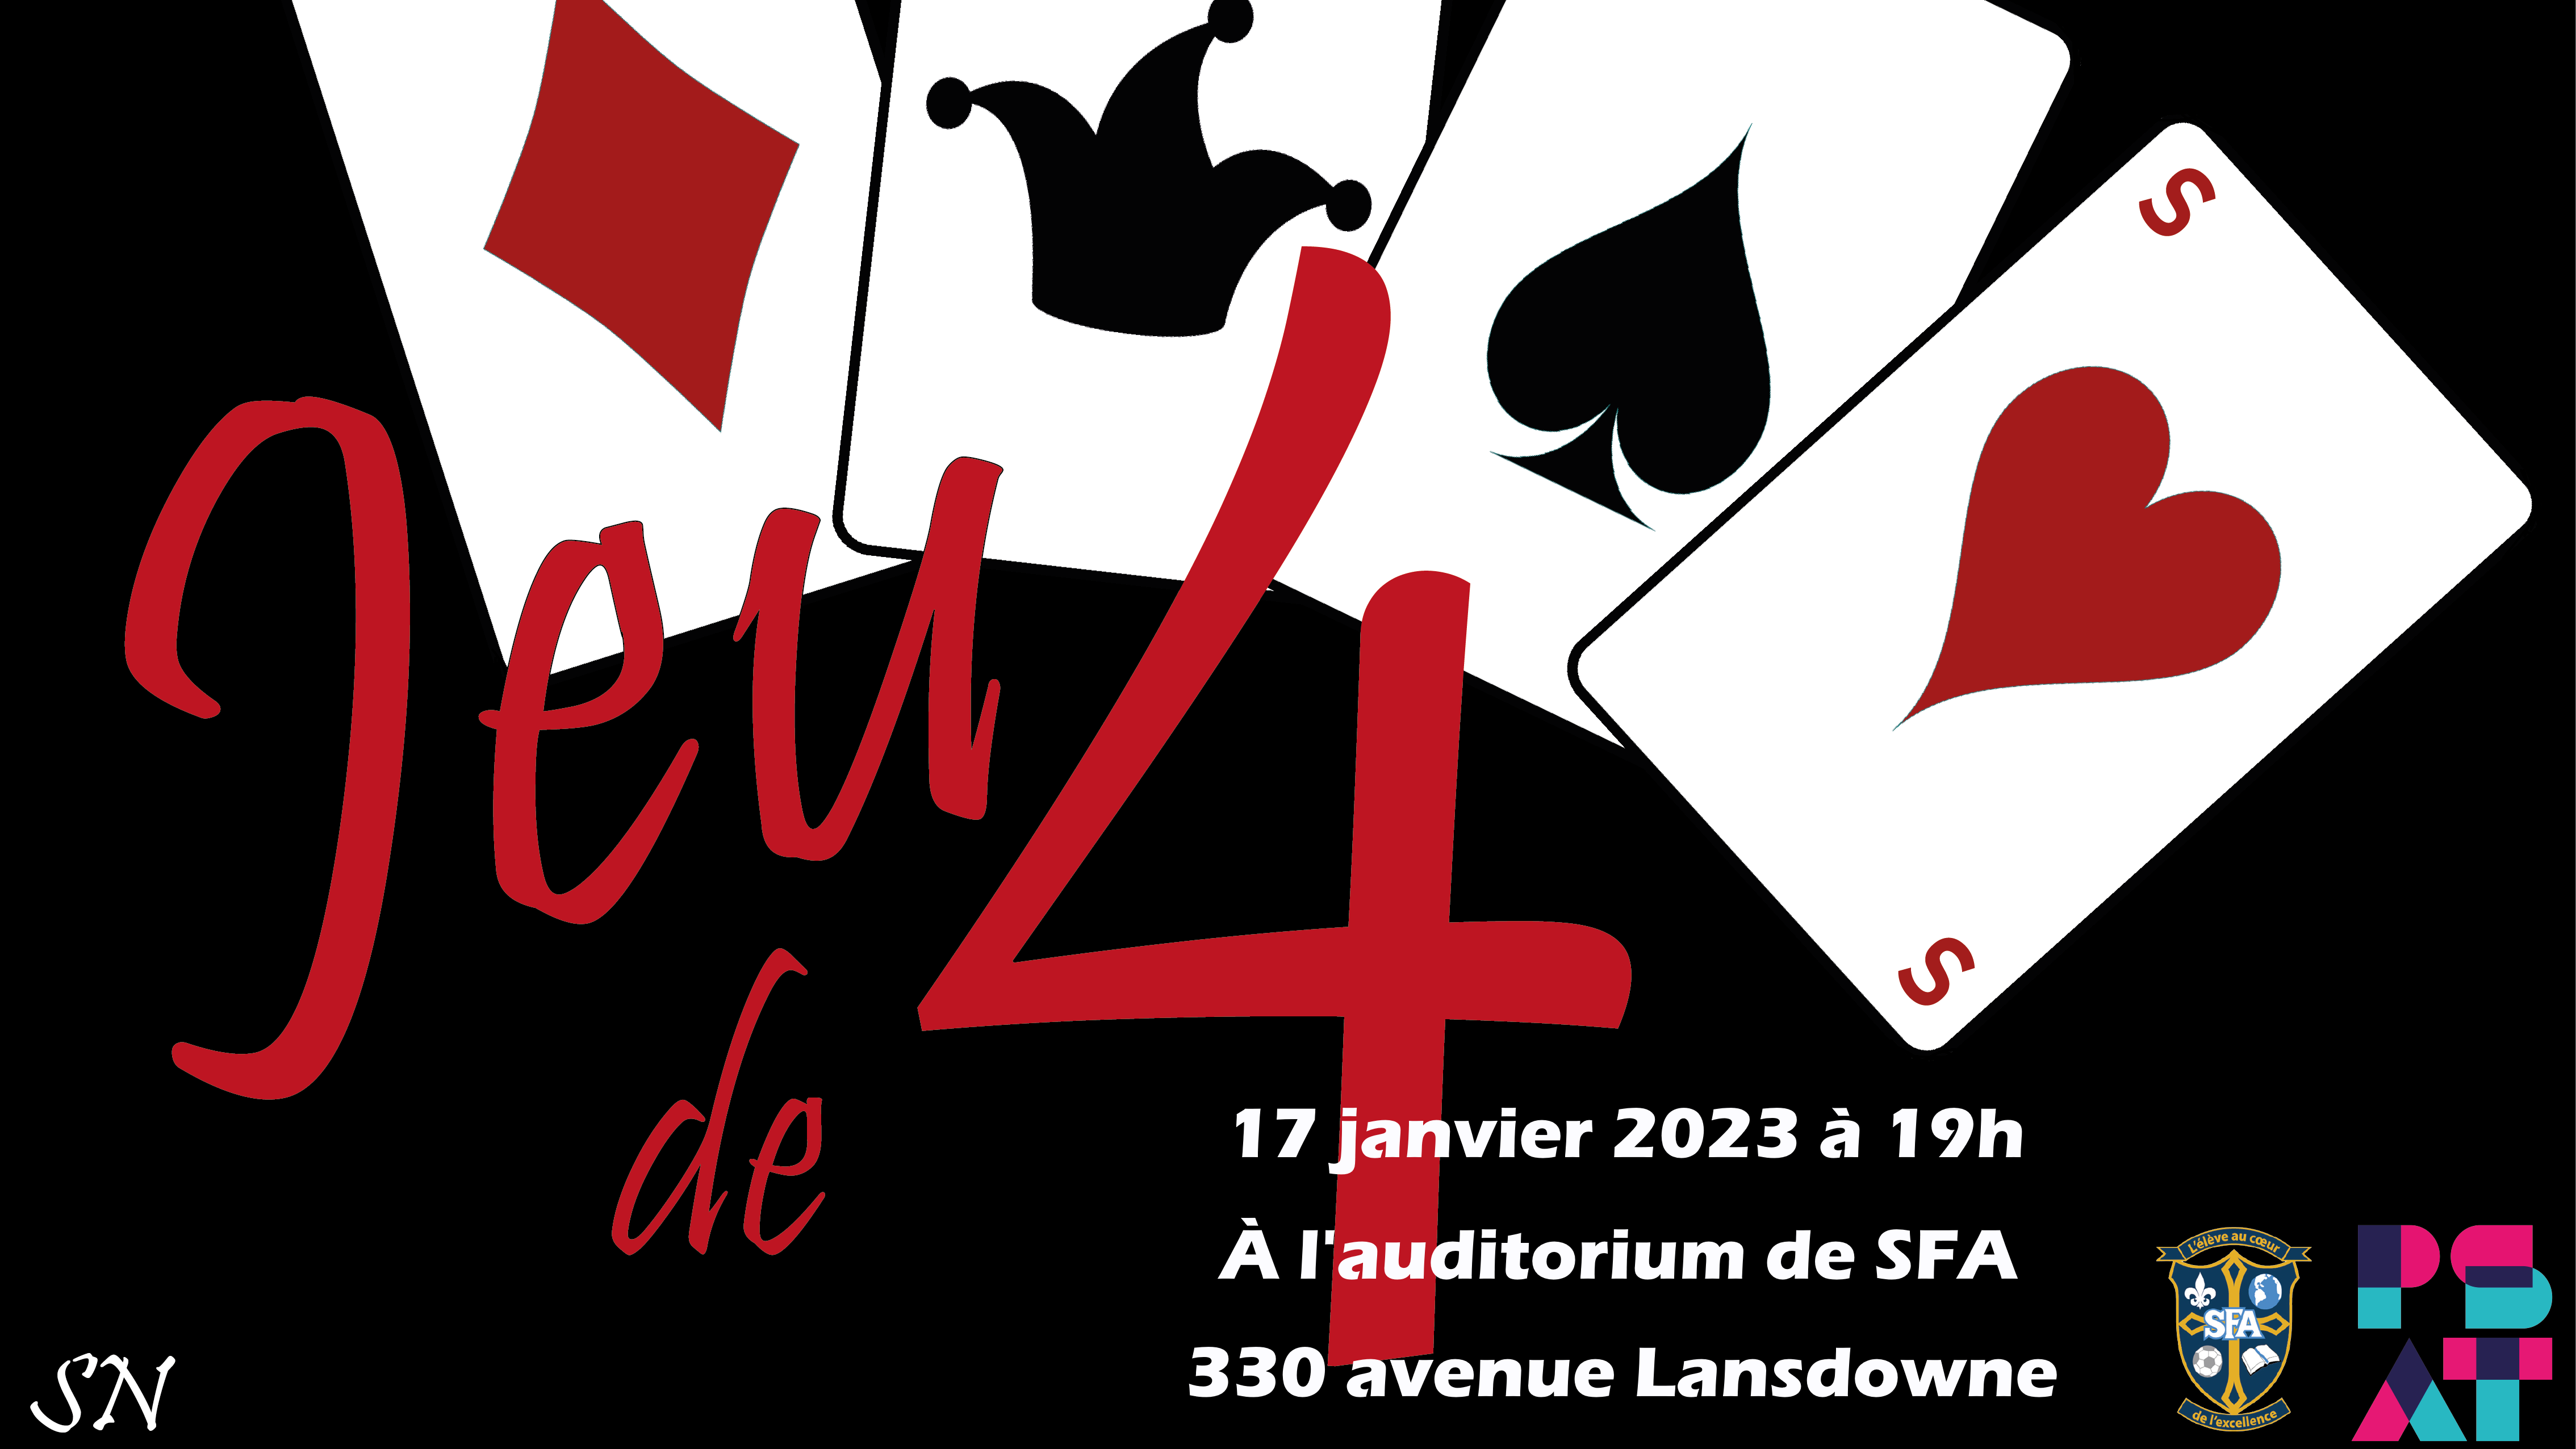 On lit : Jeu de 4, 17 janvier 2023 à 19 heures à l'auditorium de SFA, 330 avenue Lansdowne sur un fond noir avec 4 cartes de jeu. Un carreau rouge, un joker noir, un pique noir et un cœur rouge.